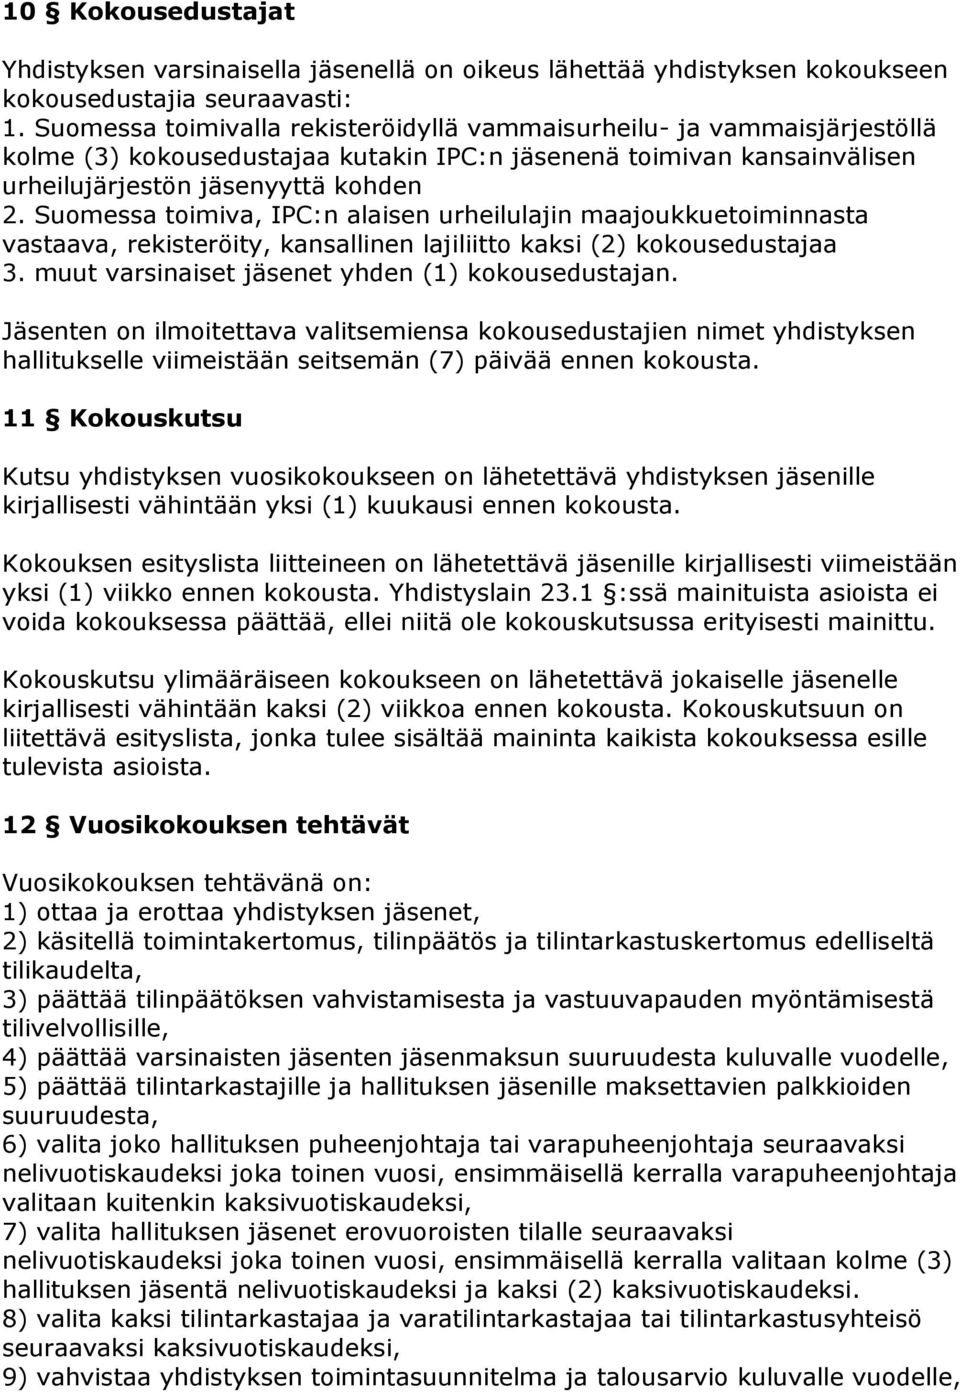 Suomessa toimiva, IPC:n alaisen urheilulajin maajoukkuetoiminnasta vastaava, rekisteröity, kansallinen lajiliitto kaksi (2) kokousedustajaa 3. muut varsinaiset jäsenet yhden (1) kokousedustajan.